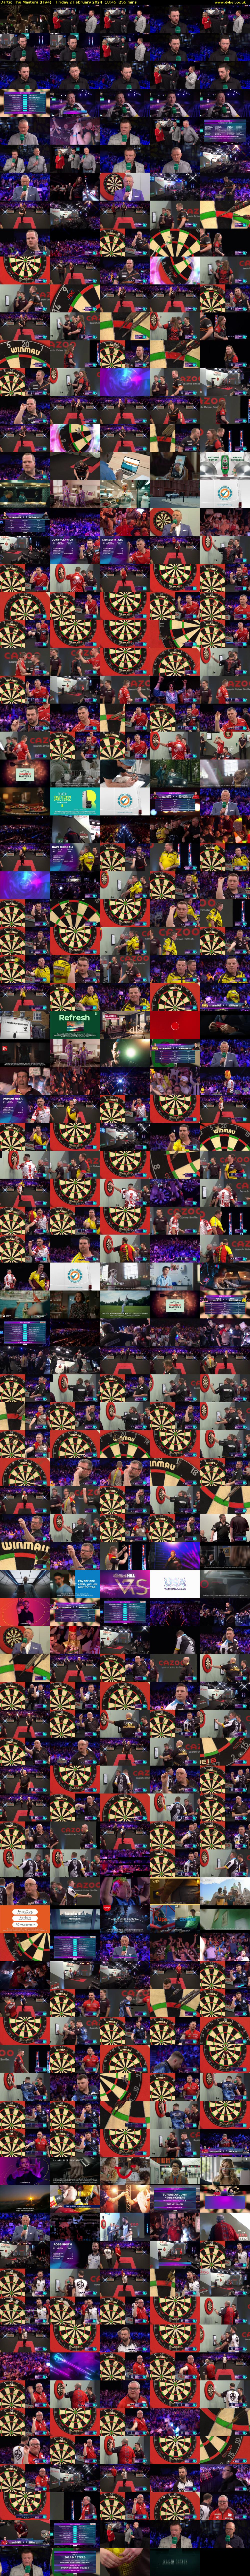 Darts: The Masters (ITV4) Friday 2 February 2024 18:45 - 23:00